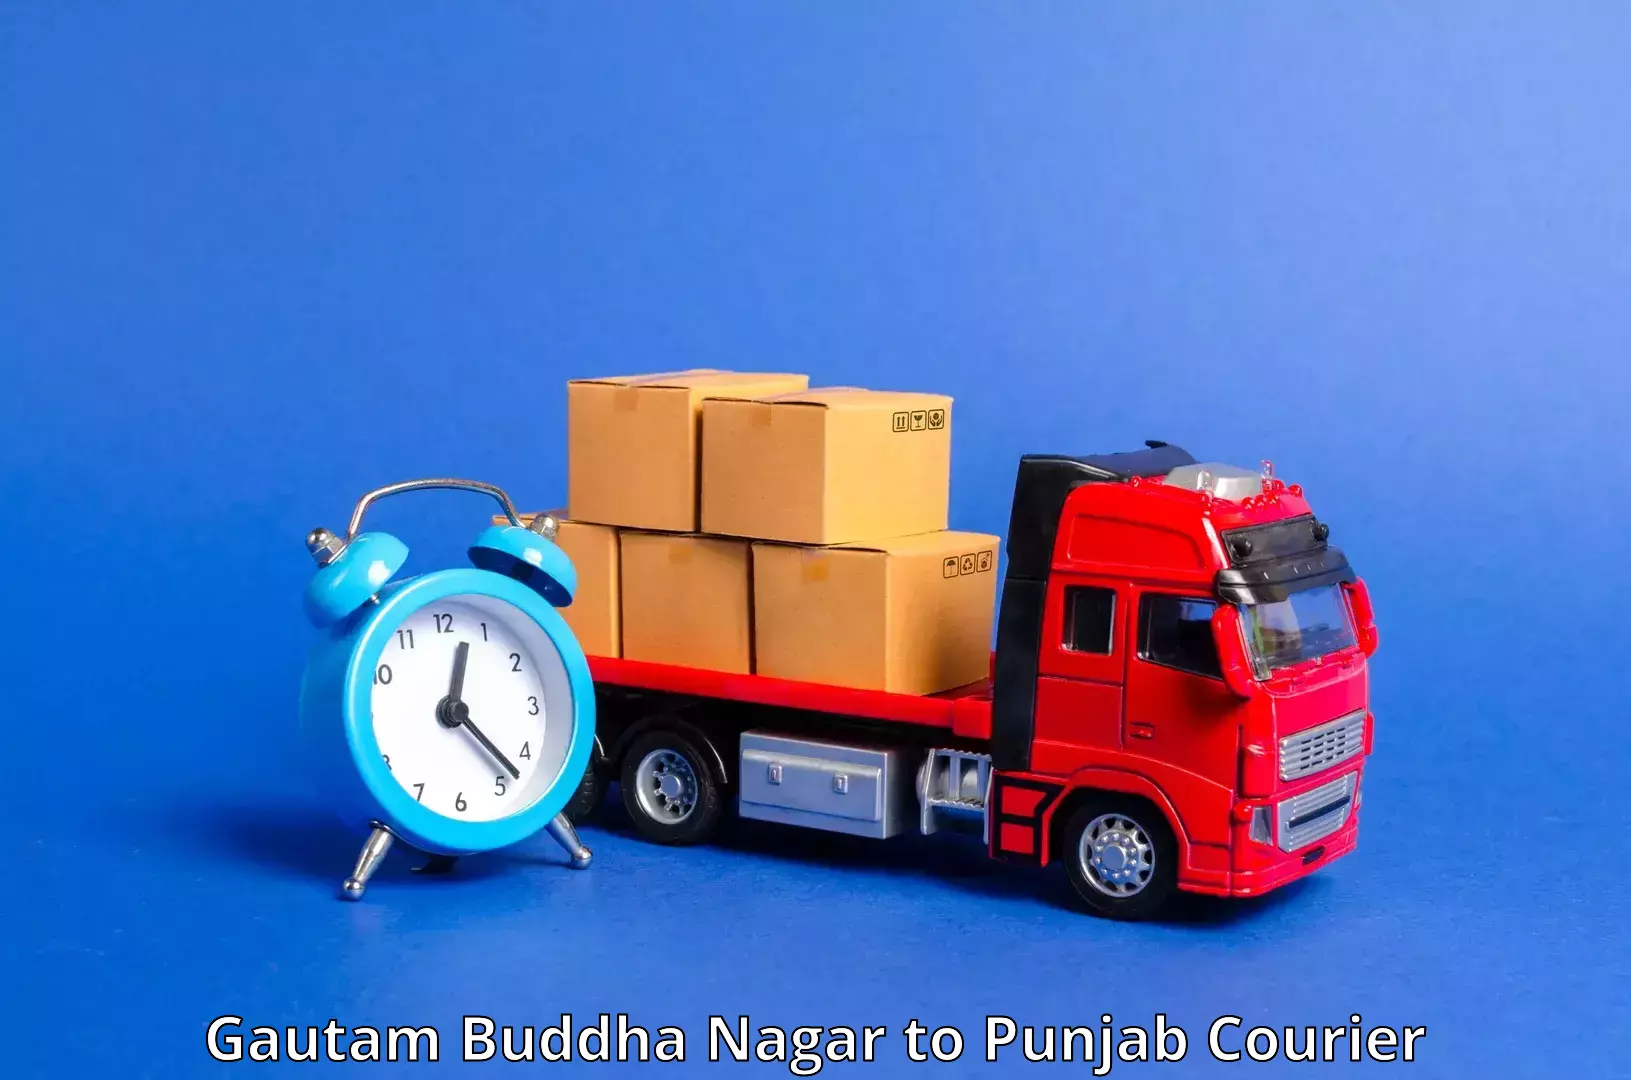 Courier service comparison Gautam Buddha Nagar to Hoshiarpur